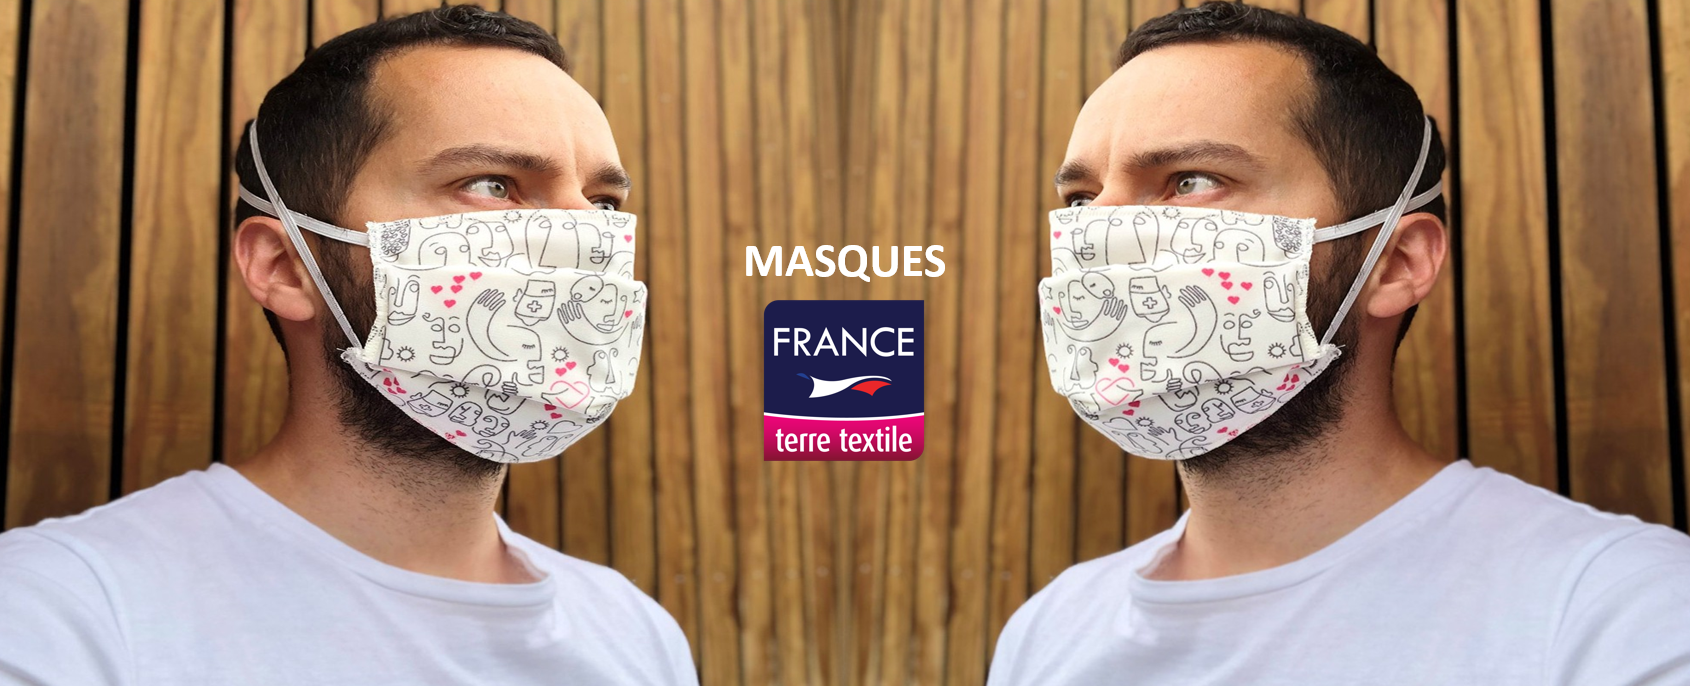 Le label France terre textile